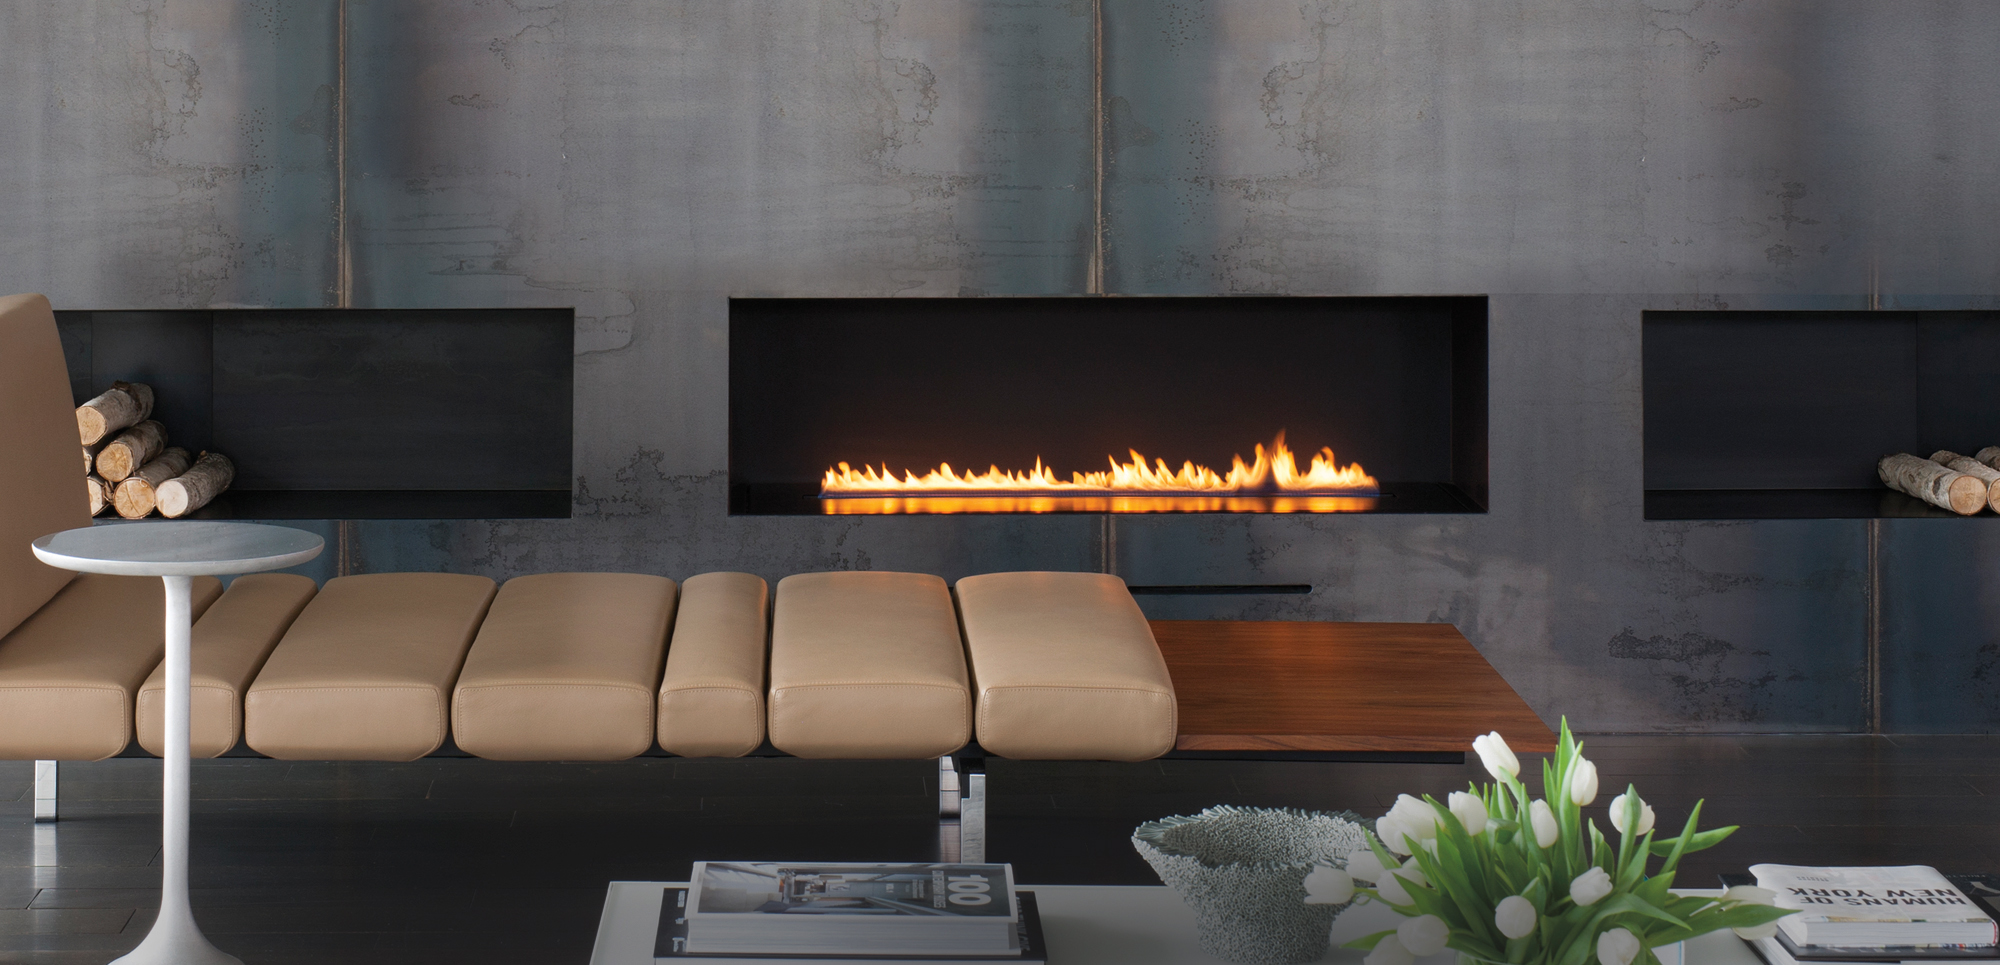 Adding A Gas Fireplace Inspirational Spark Modern Fires